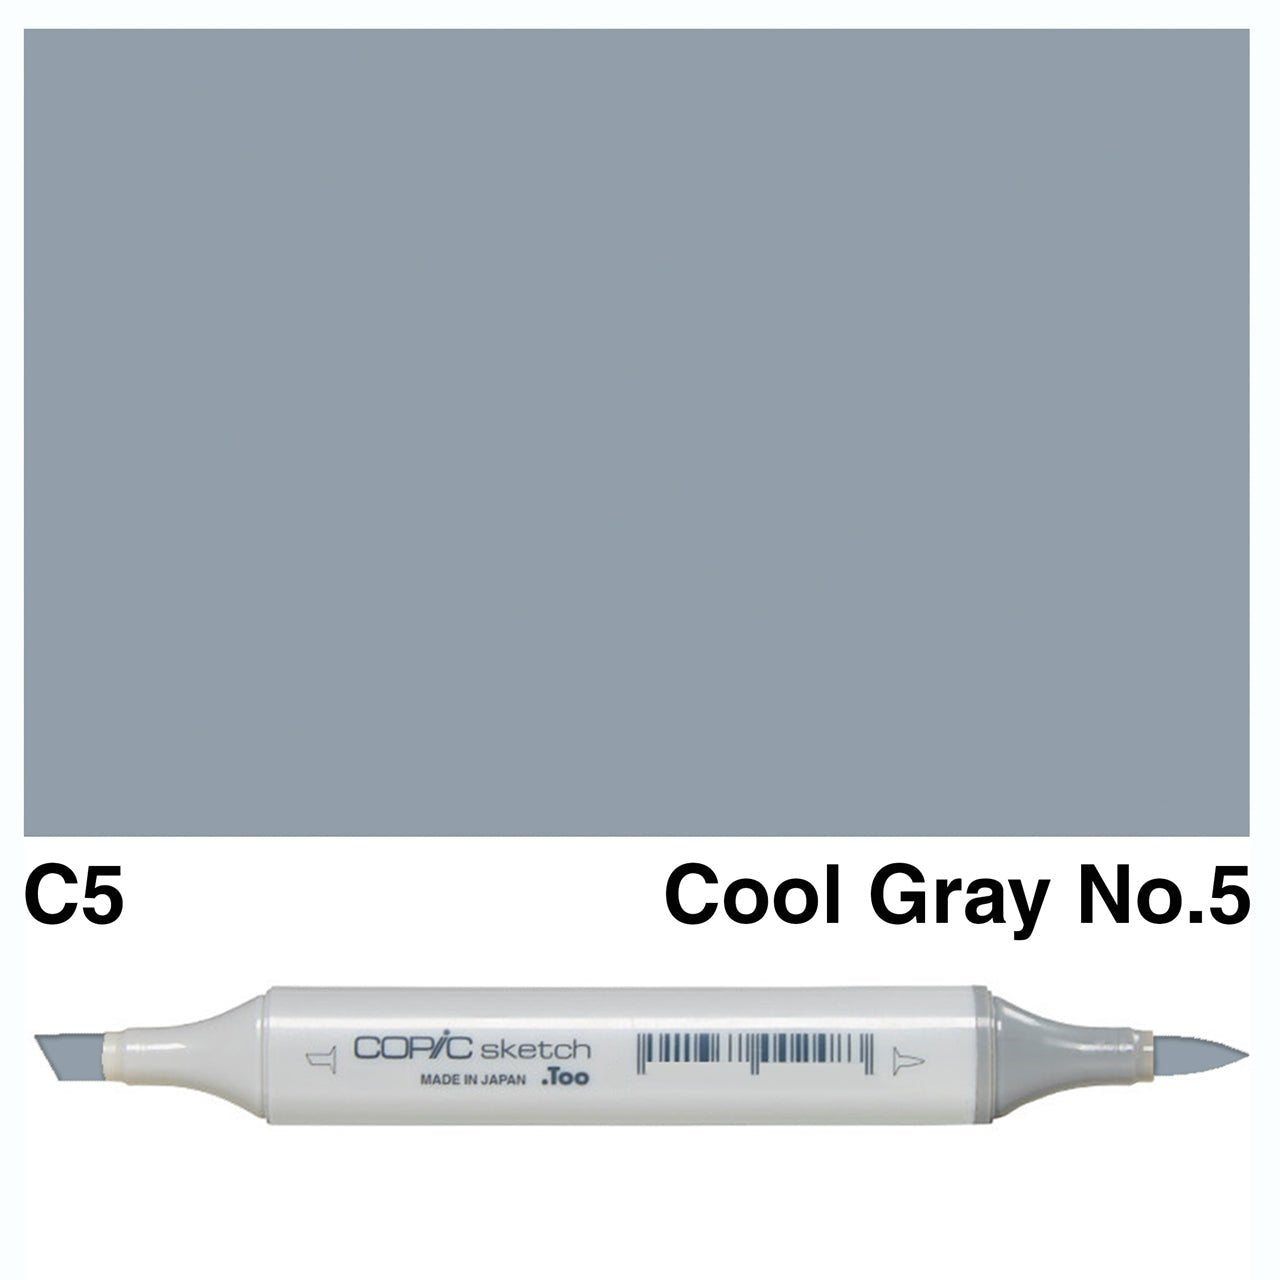 Copic Sketch C5 Cool Gray No.5 - theartshop.com.au